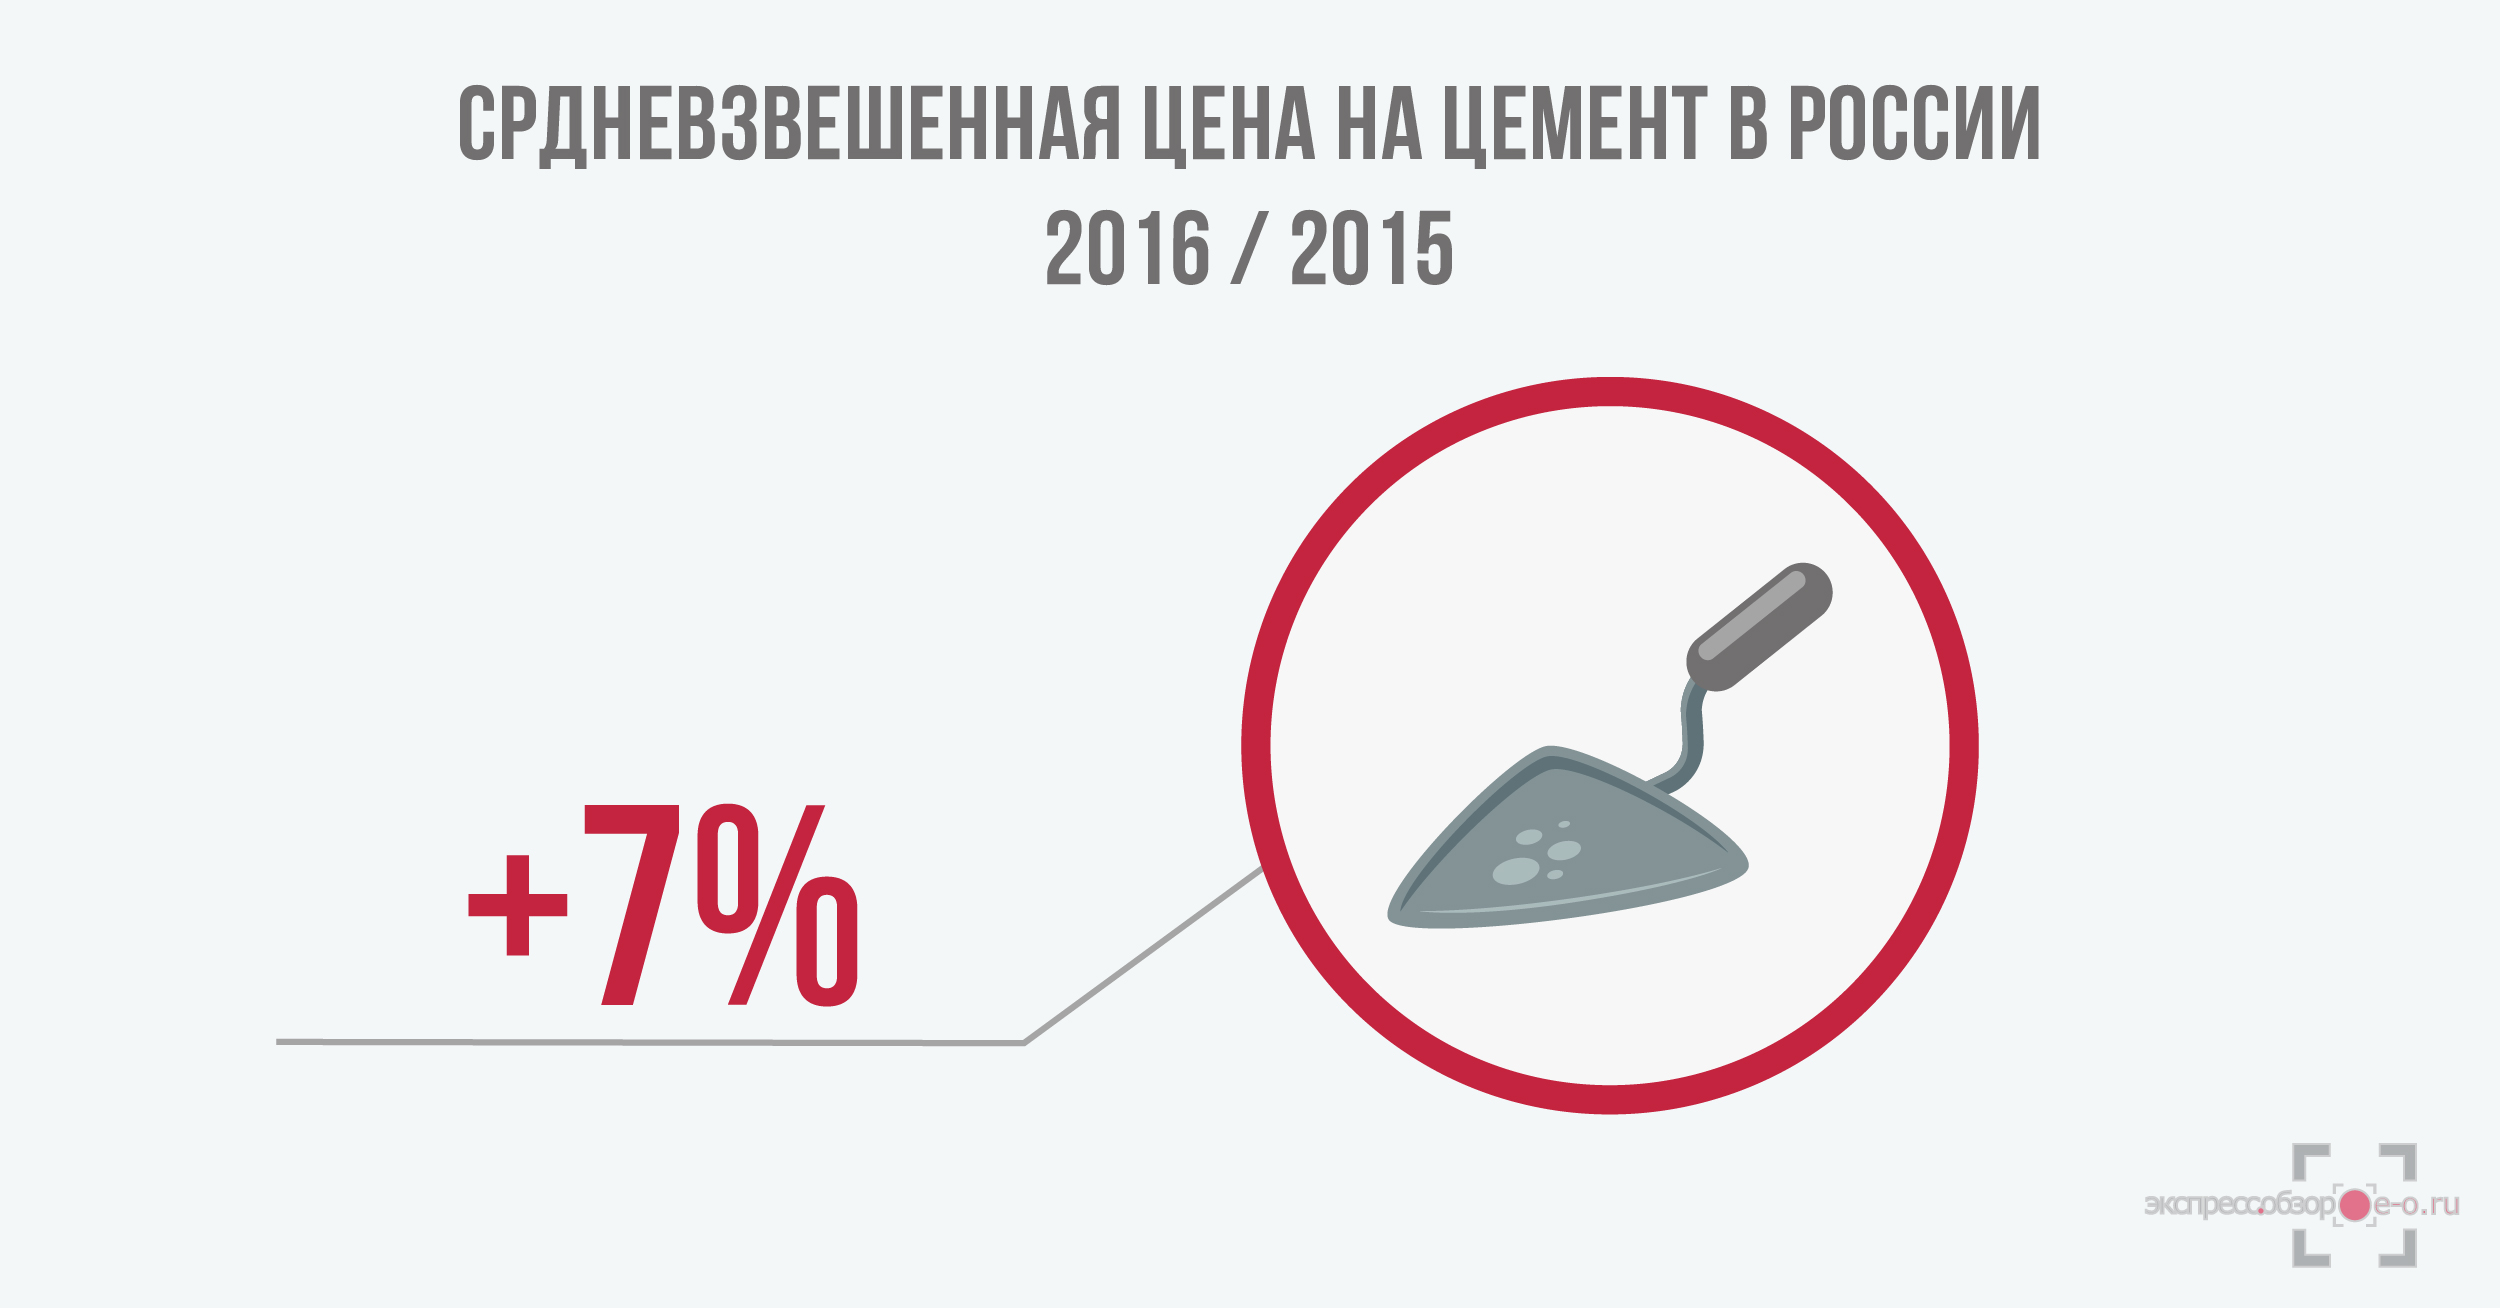 цены на цемент в России